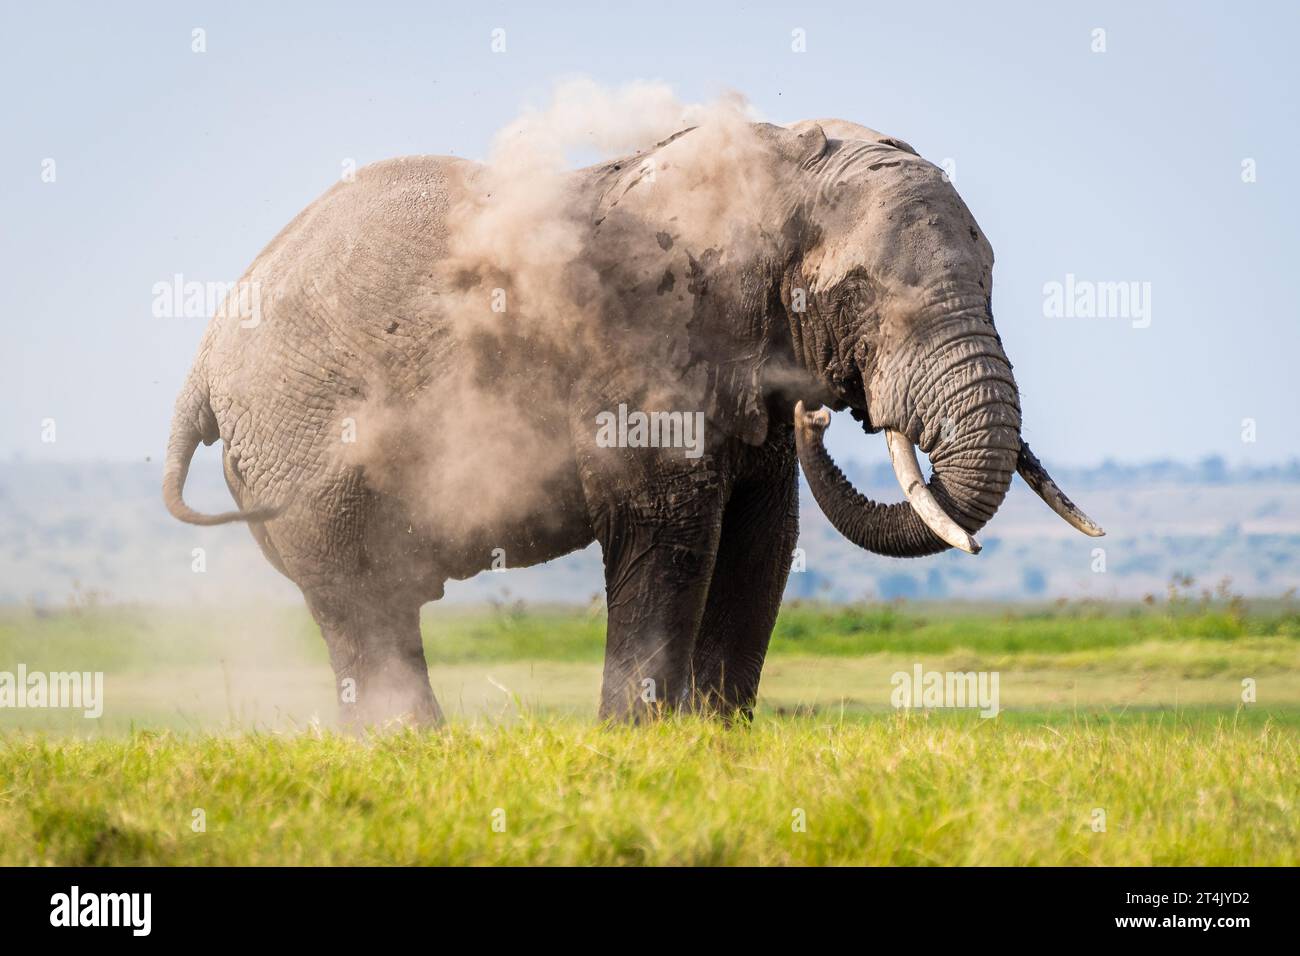 Der große afrikanische Elefant wirft Staub auf sich, wenn er im grünen Gras steht Stockfoto